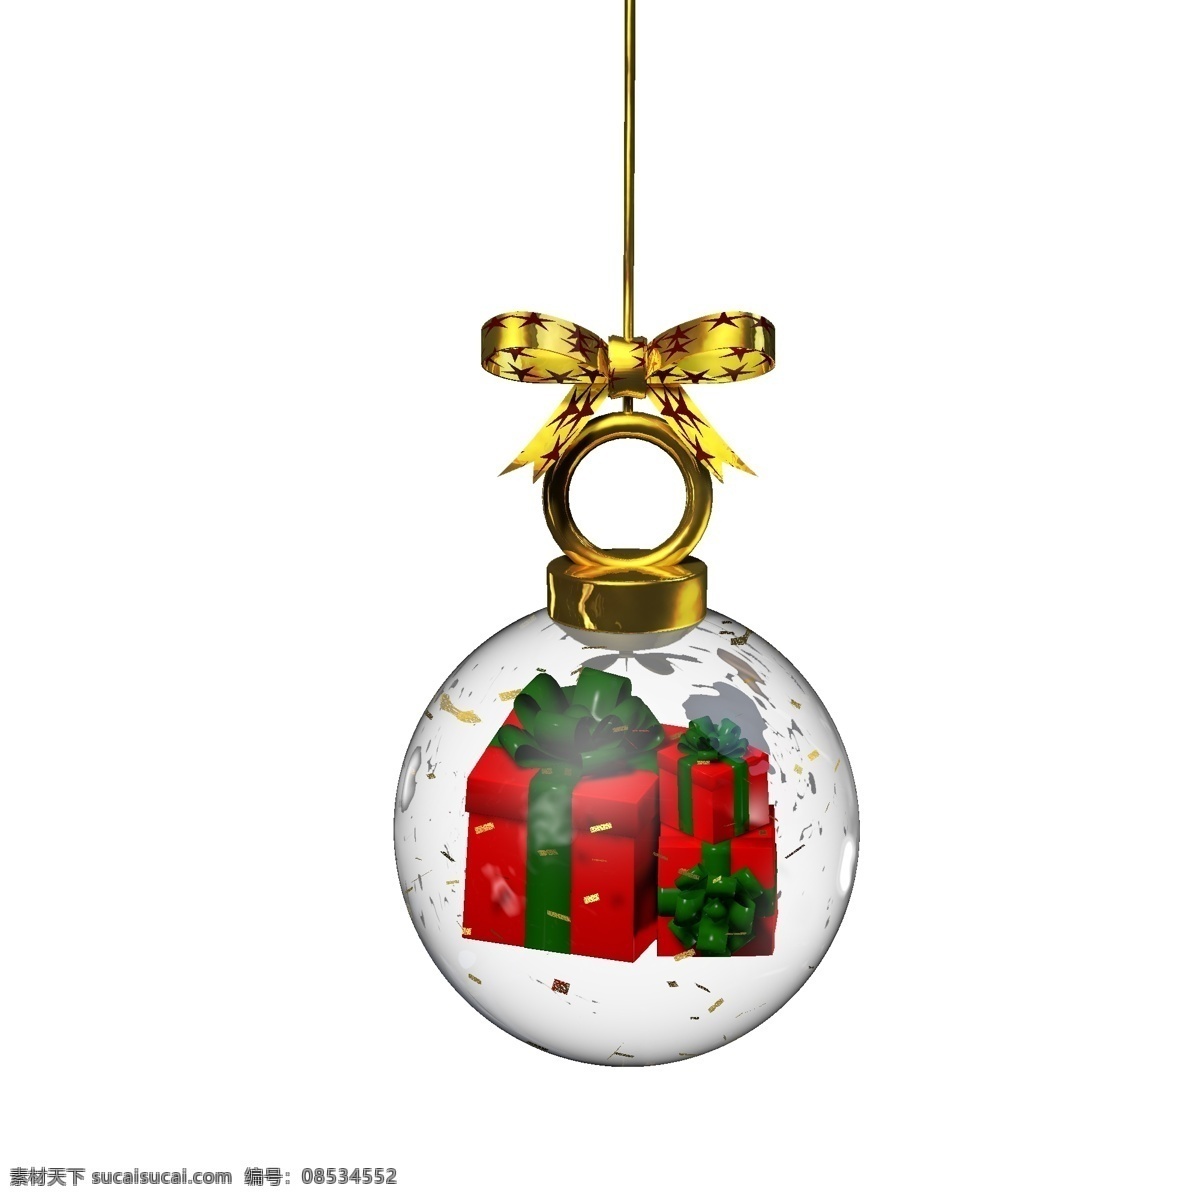 金色 圣诞 元素 水晶 玻璃球 挂件 礼盒 卡通 红色 绿色 彩色 圣诞元素